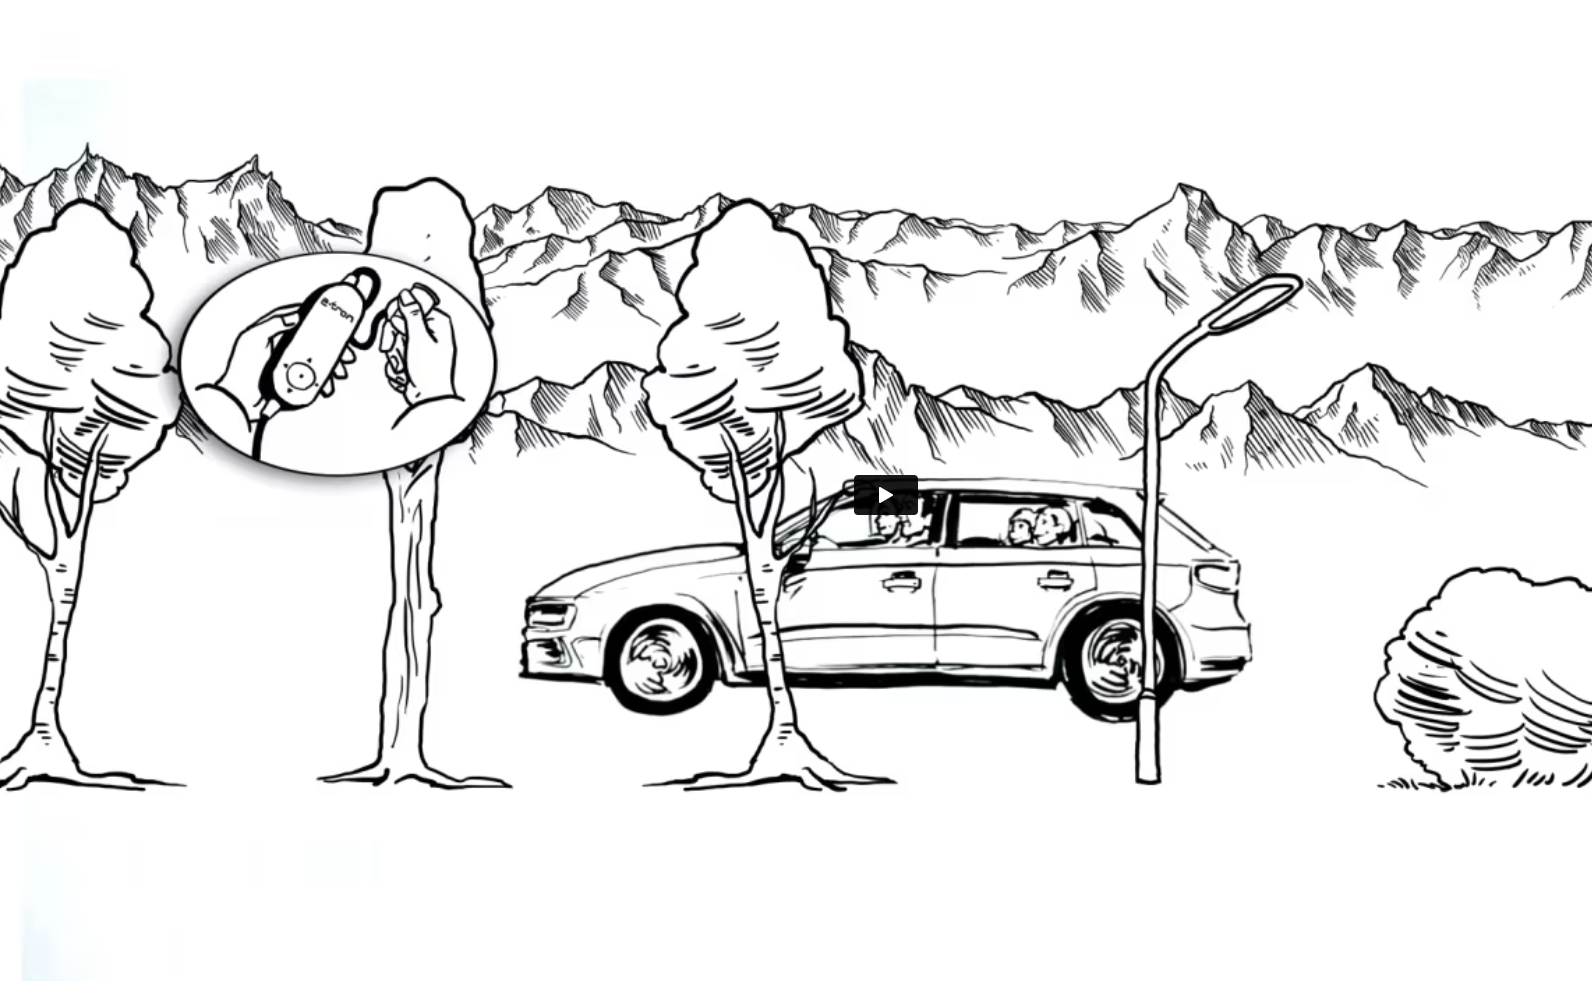 Zeichnung eines Audi Fahrzeugs mit einer Familia